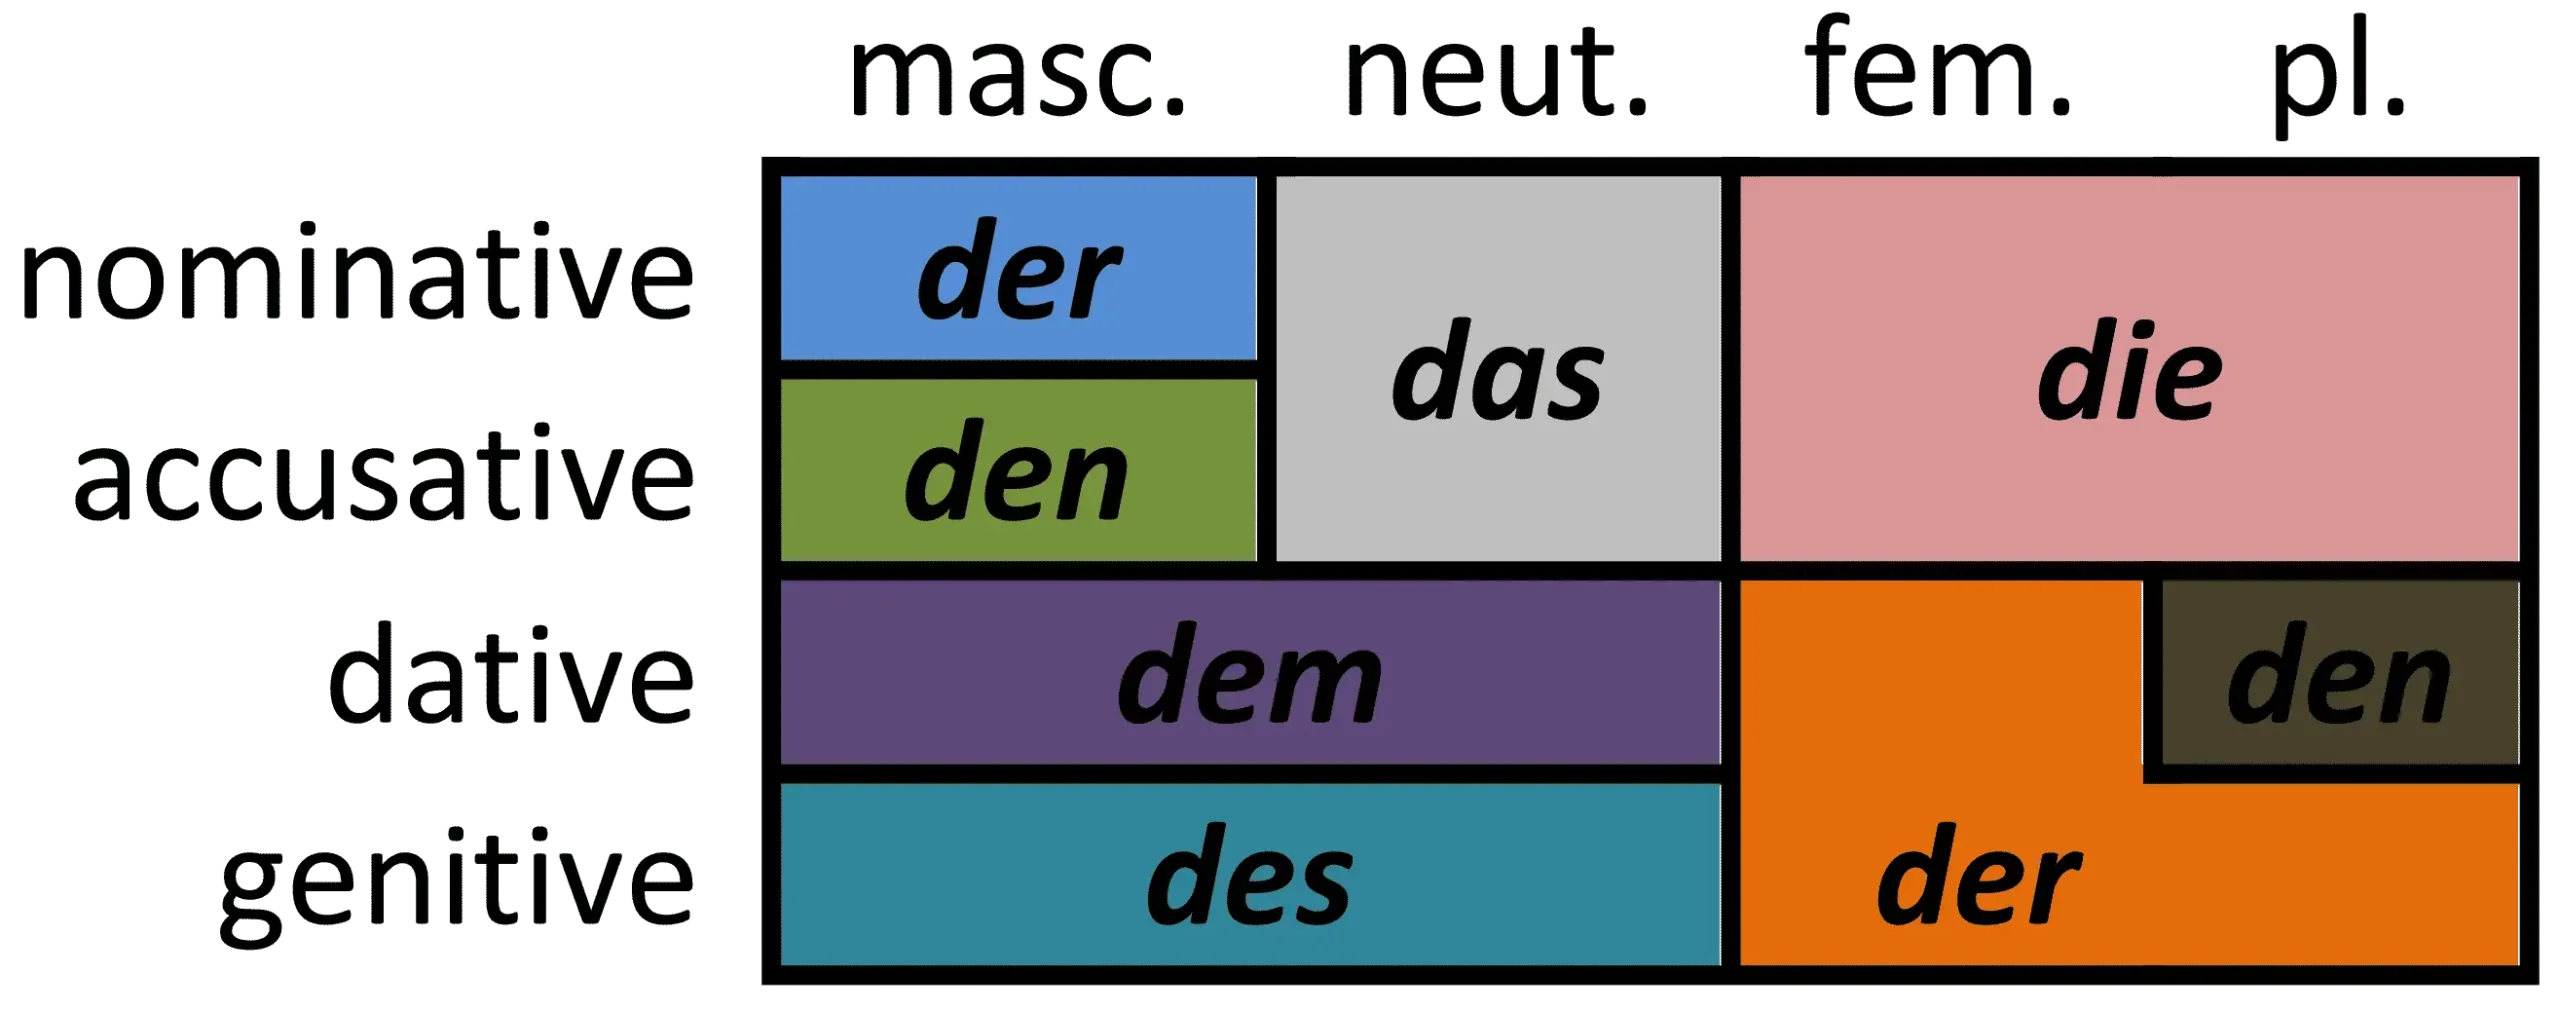 داتیو در زبان آلمانی